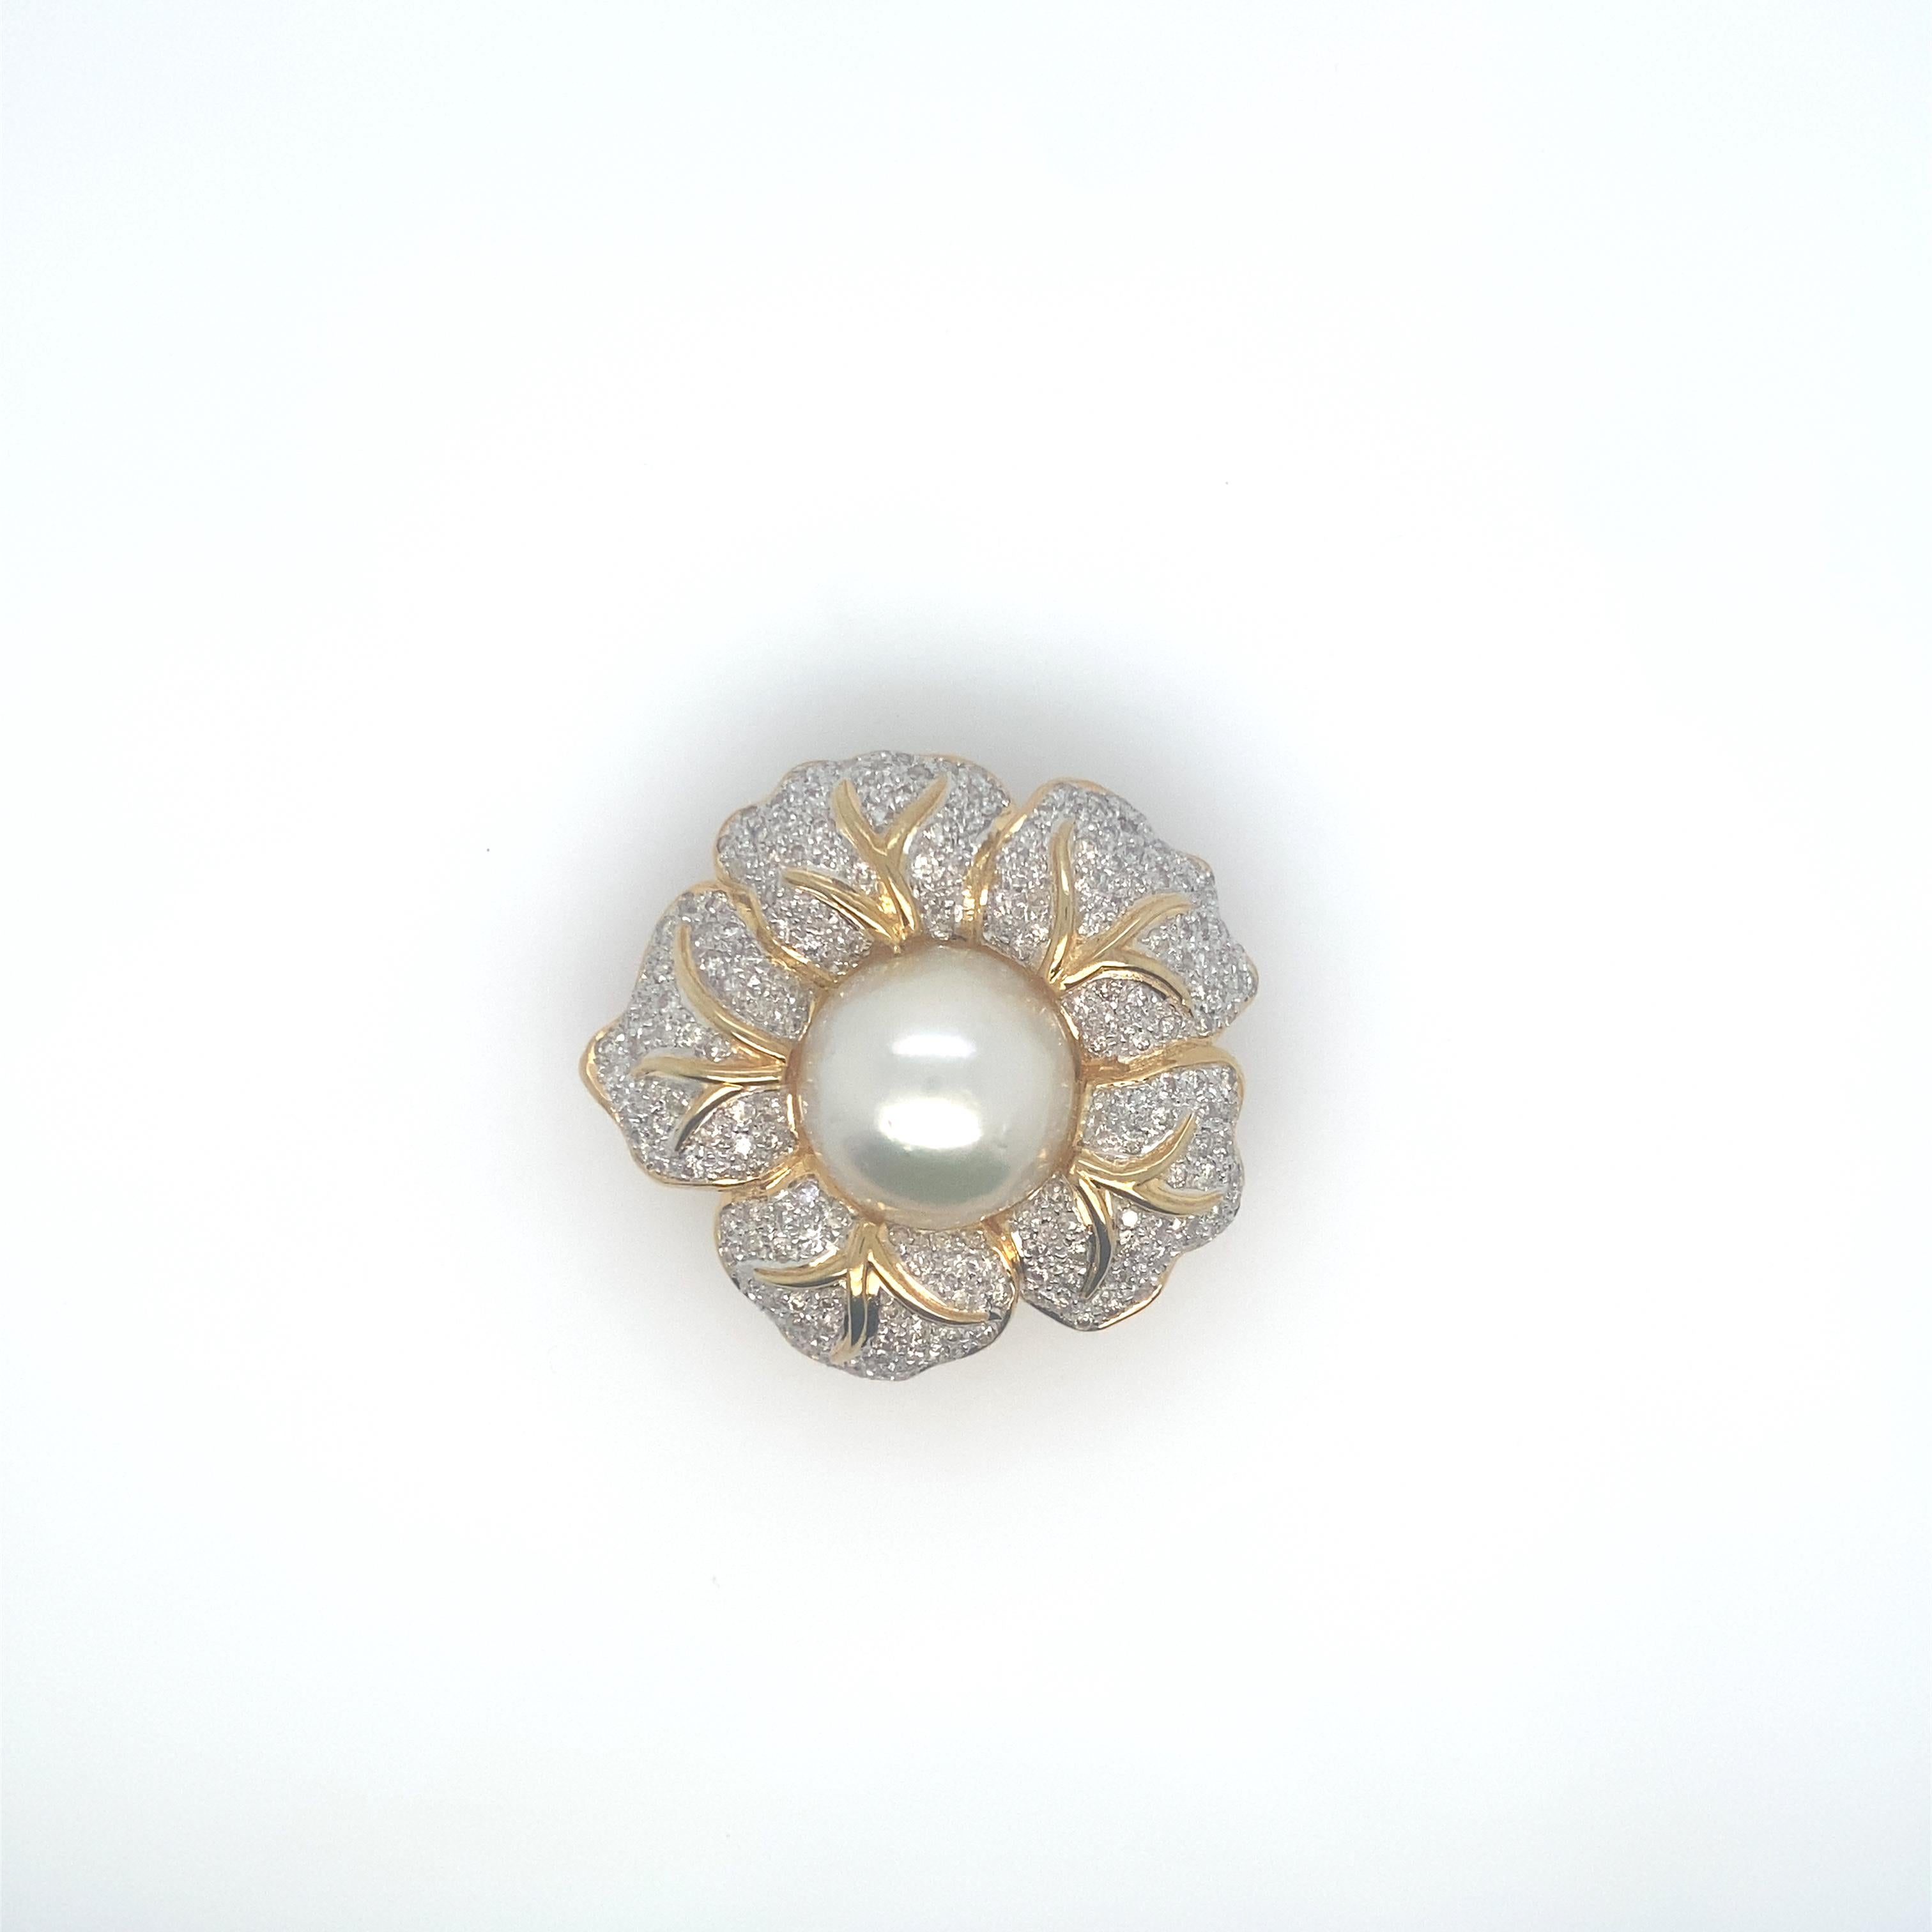 Magnifiques grandes et rares perles blanches des mers du Sud en forme de goutte.  Ces perles spectaculaires mesurent de 14,5 à 18,35 mm.  Ils sont de couleur très blanche, très brillants, avec quelques imperfections.  Le collier avec l'un des